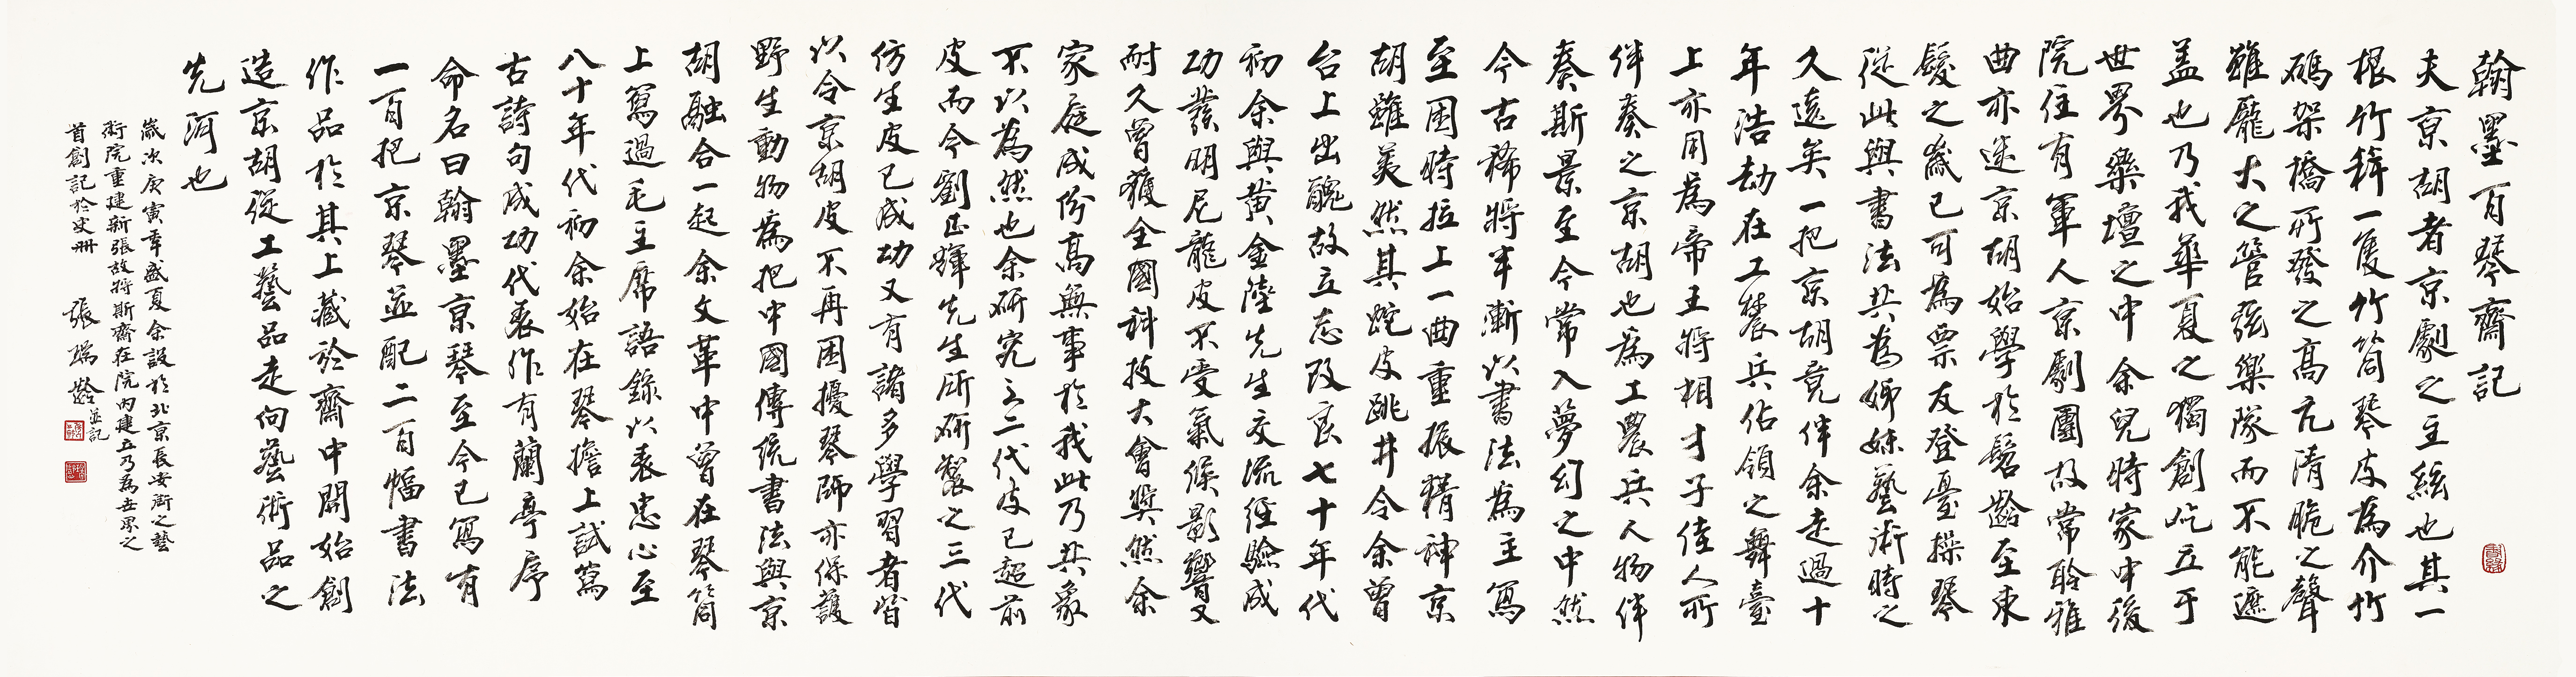 迎國慶 國家大劇院特別推出 “翰墨韆鞦 時代頌歌——張瑞齡書法展”